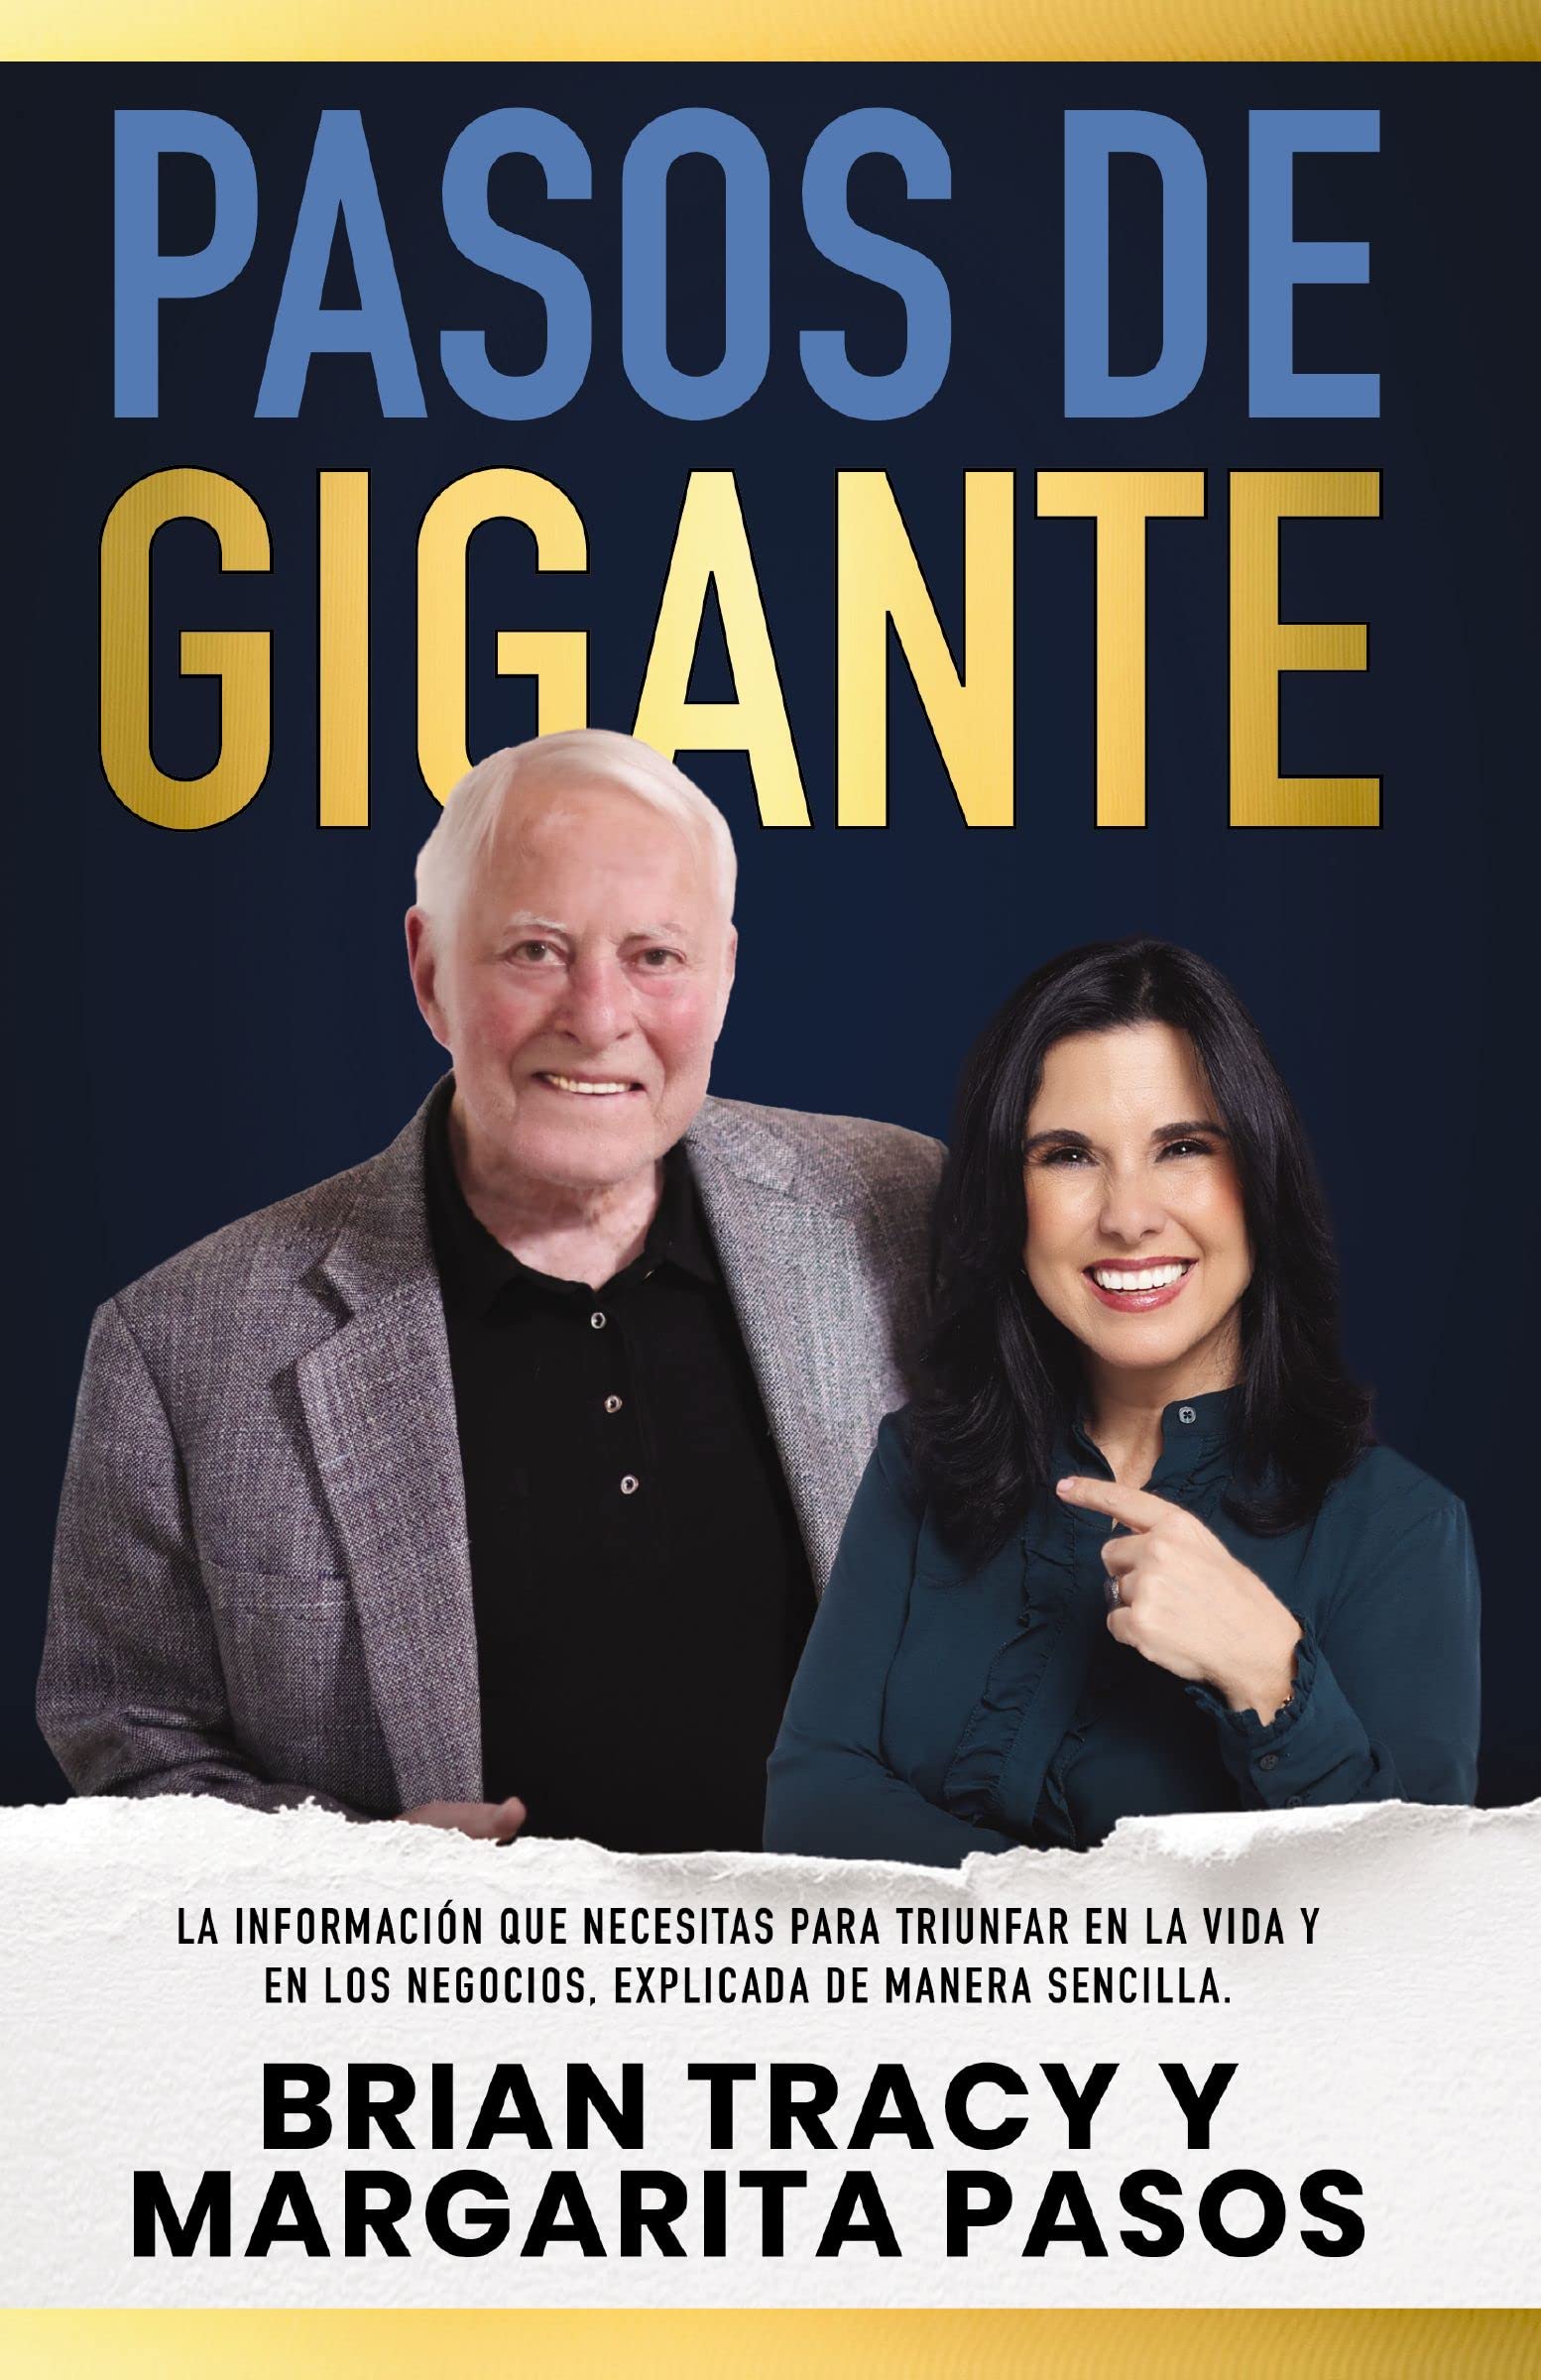 Pasos de gigante: La información que necesitas para triunfar en la vida y en los negocios, explicada de manera sencilla (Spanish Edition)